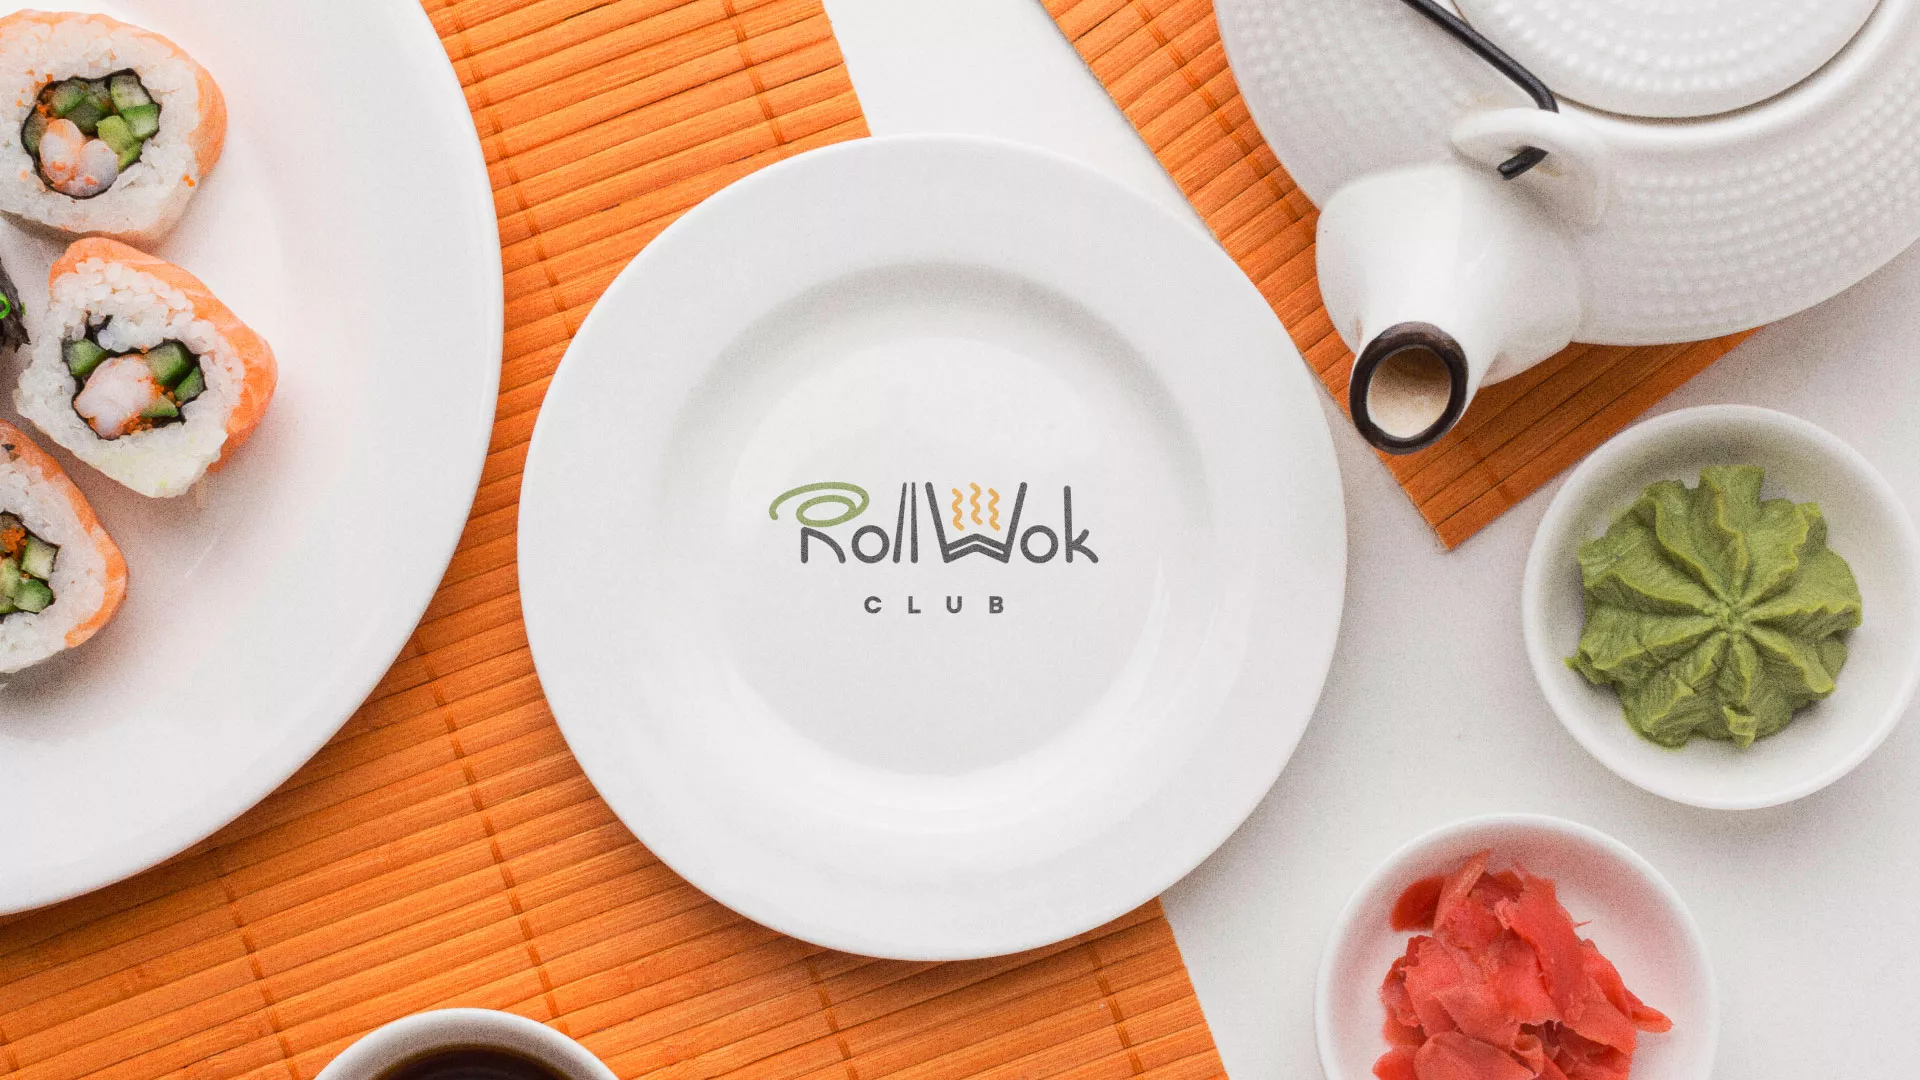 Разработка логотипа и фирменного стиля суши-бара «Roll Wok Club» в Коломне